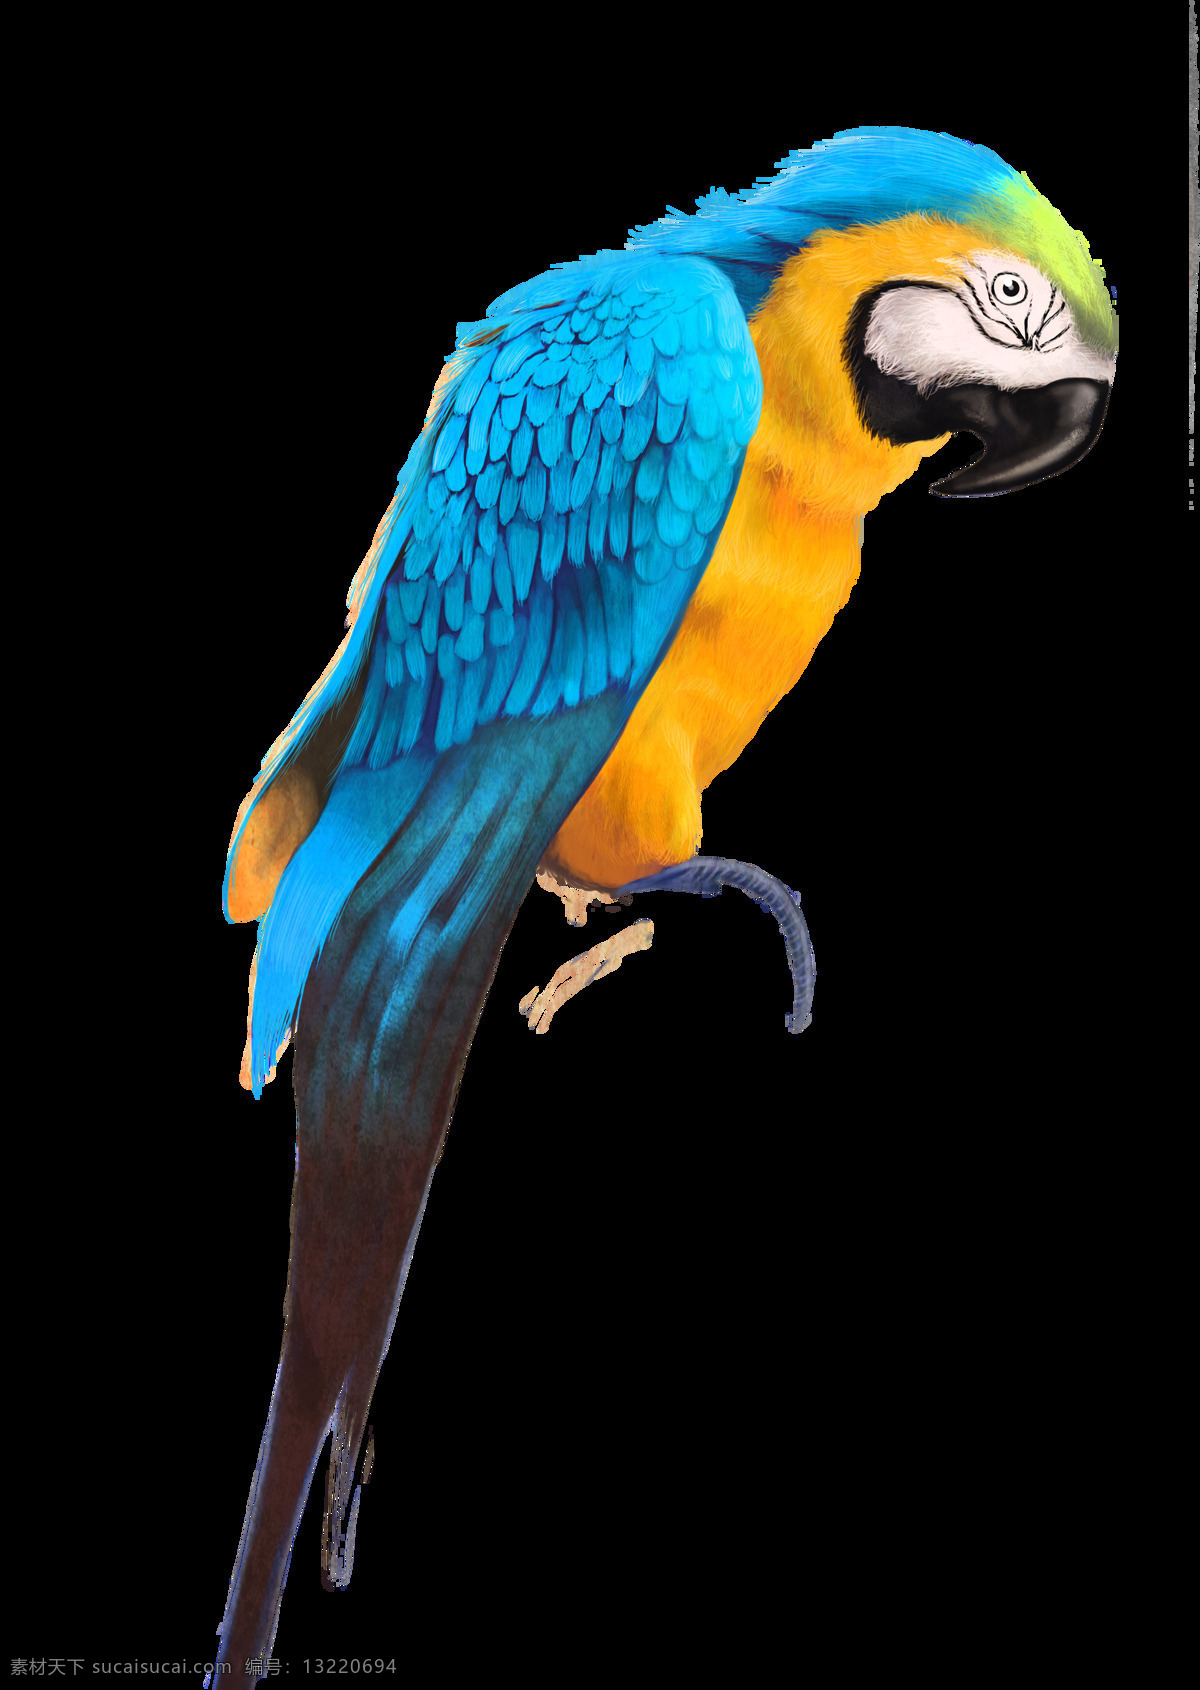 鸟类 鹦鹉 小鸟 飞禽 巴哥 生物世界 野生动物 彩色 蓝色翅膀鹦鹉 展翅飞翔